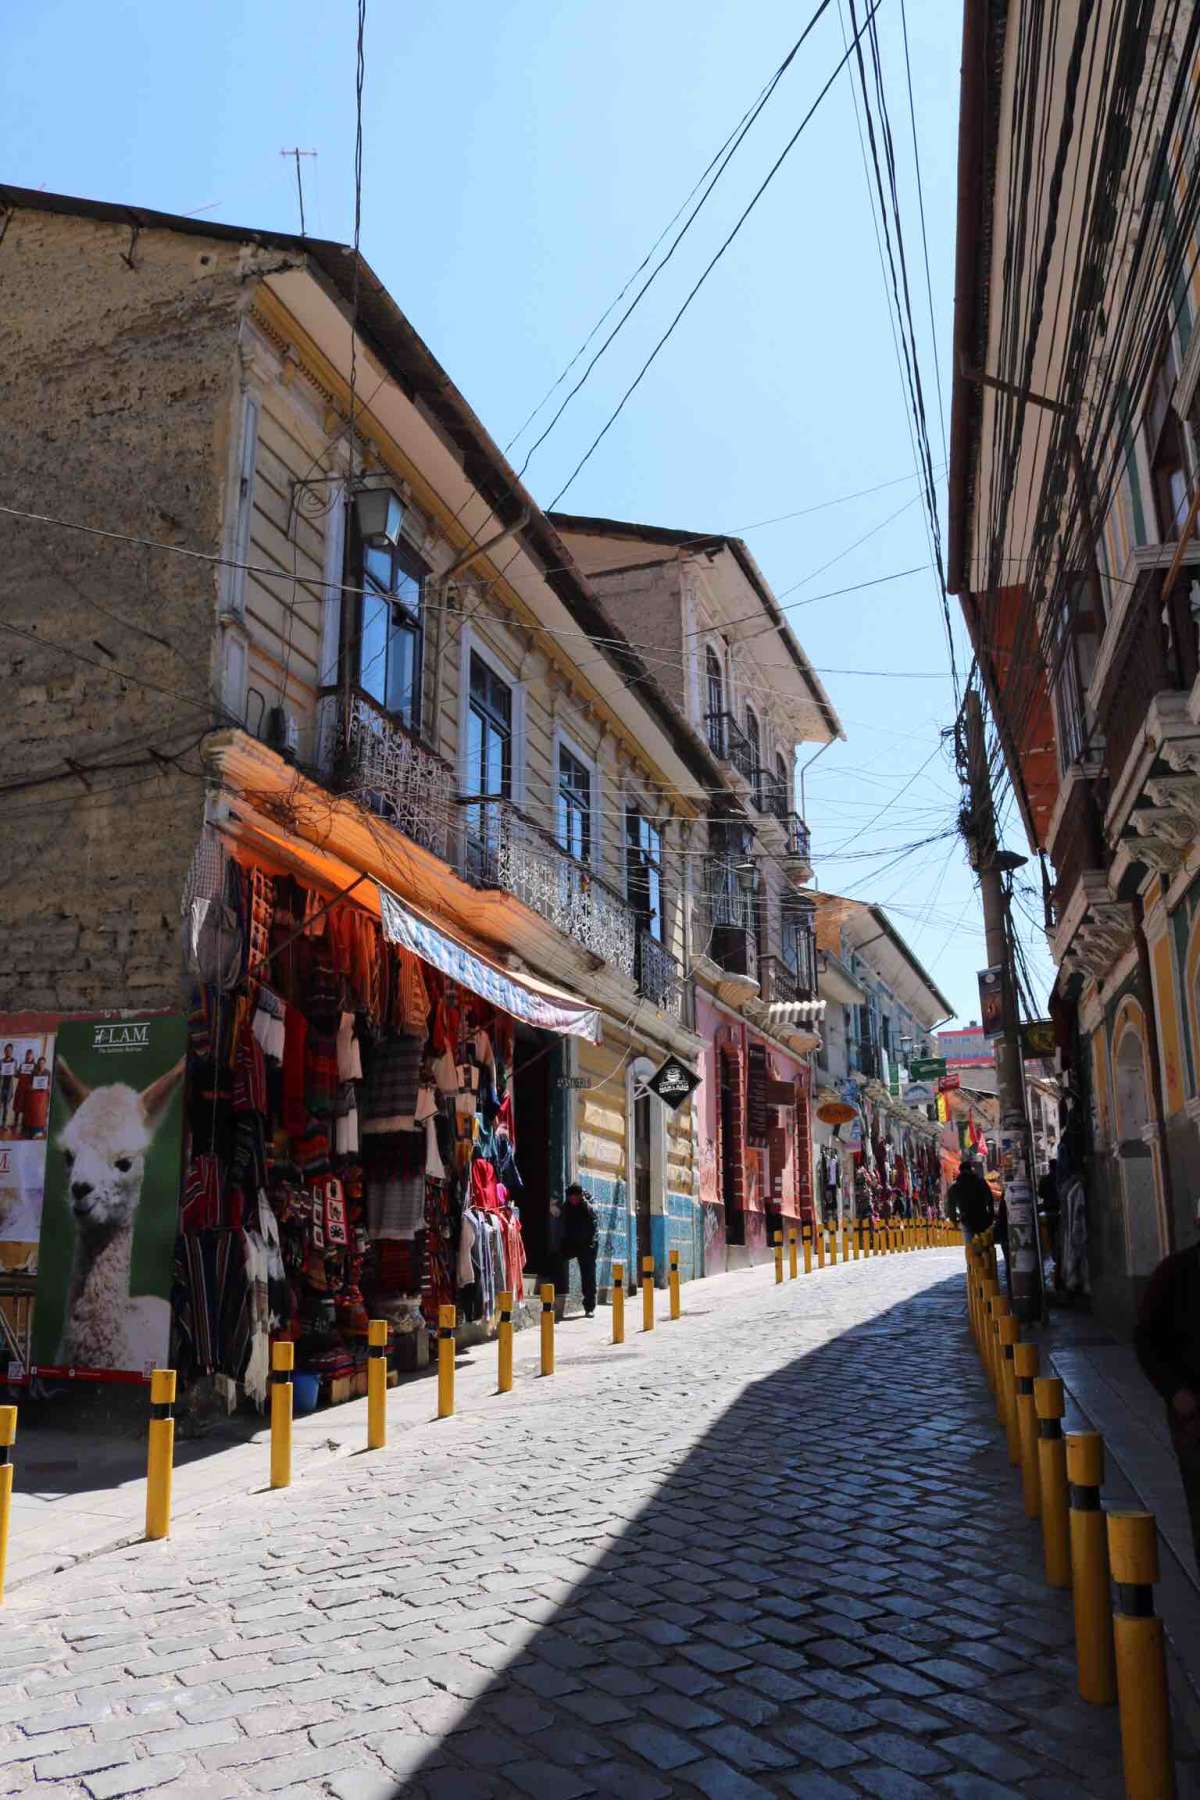 Calle Linares - the main street of Mercado de las Brujas